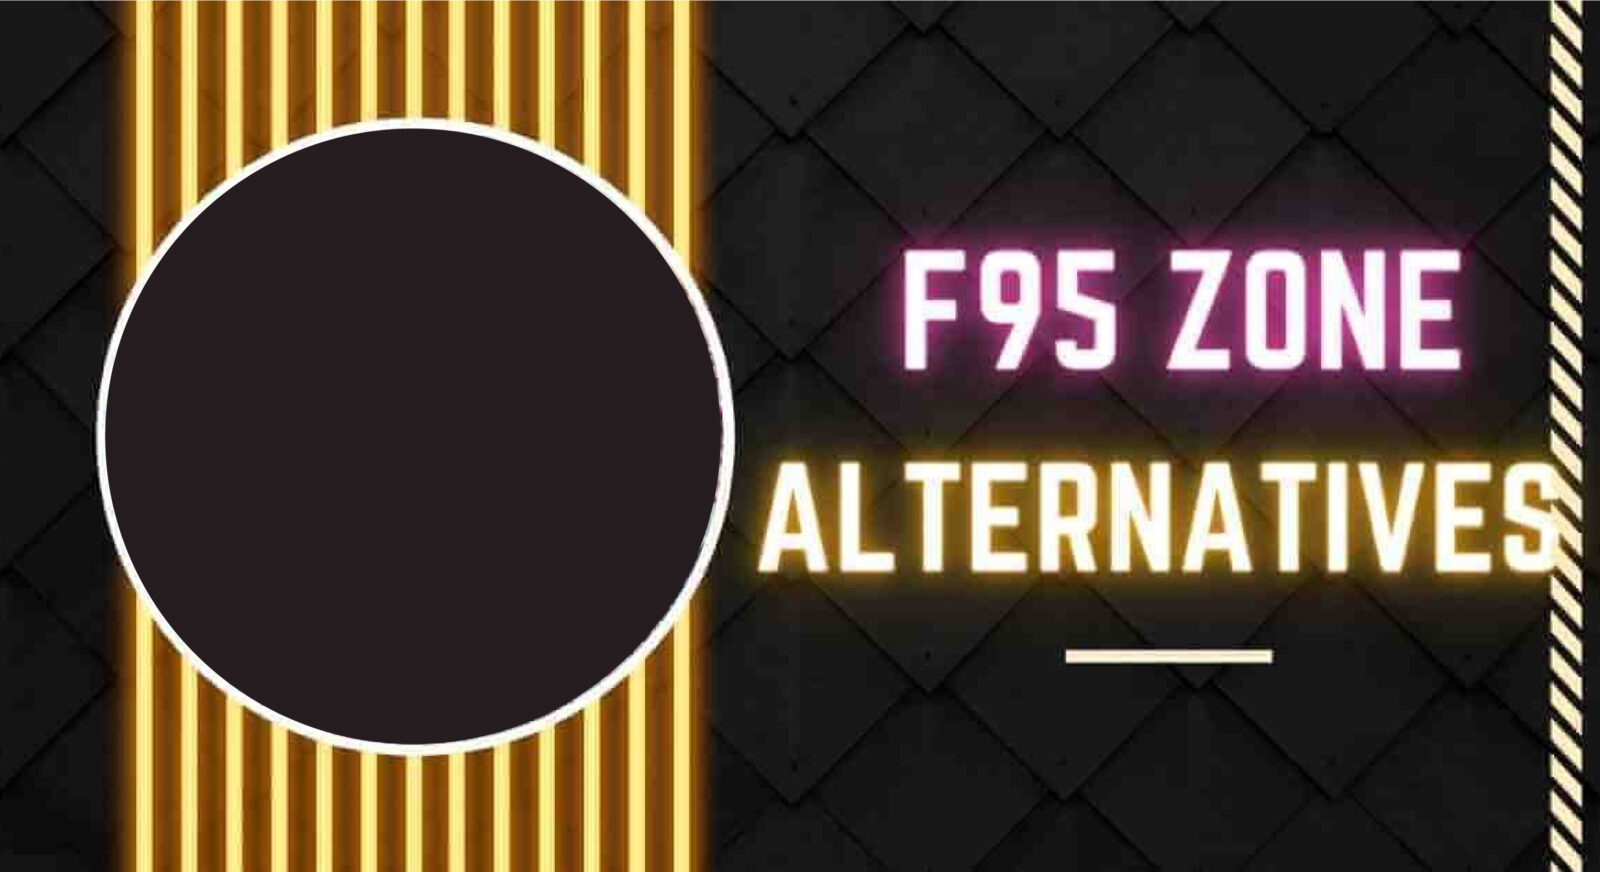 Alternativen F95zone